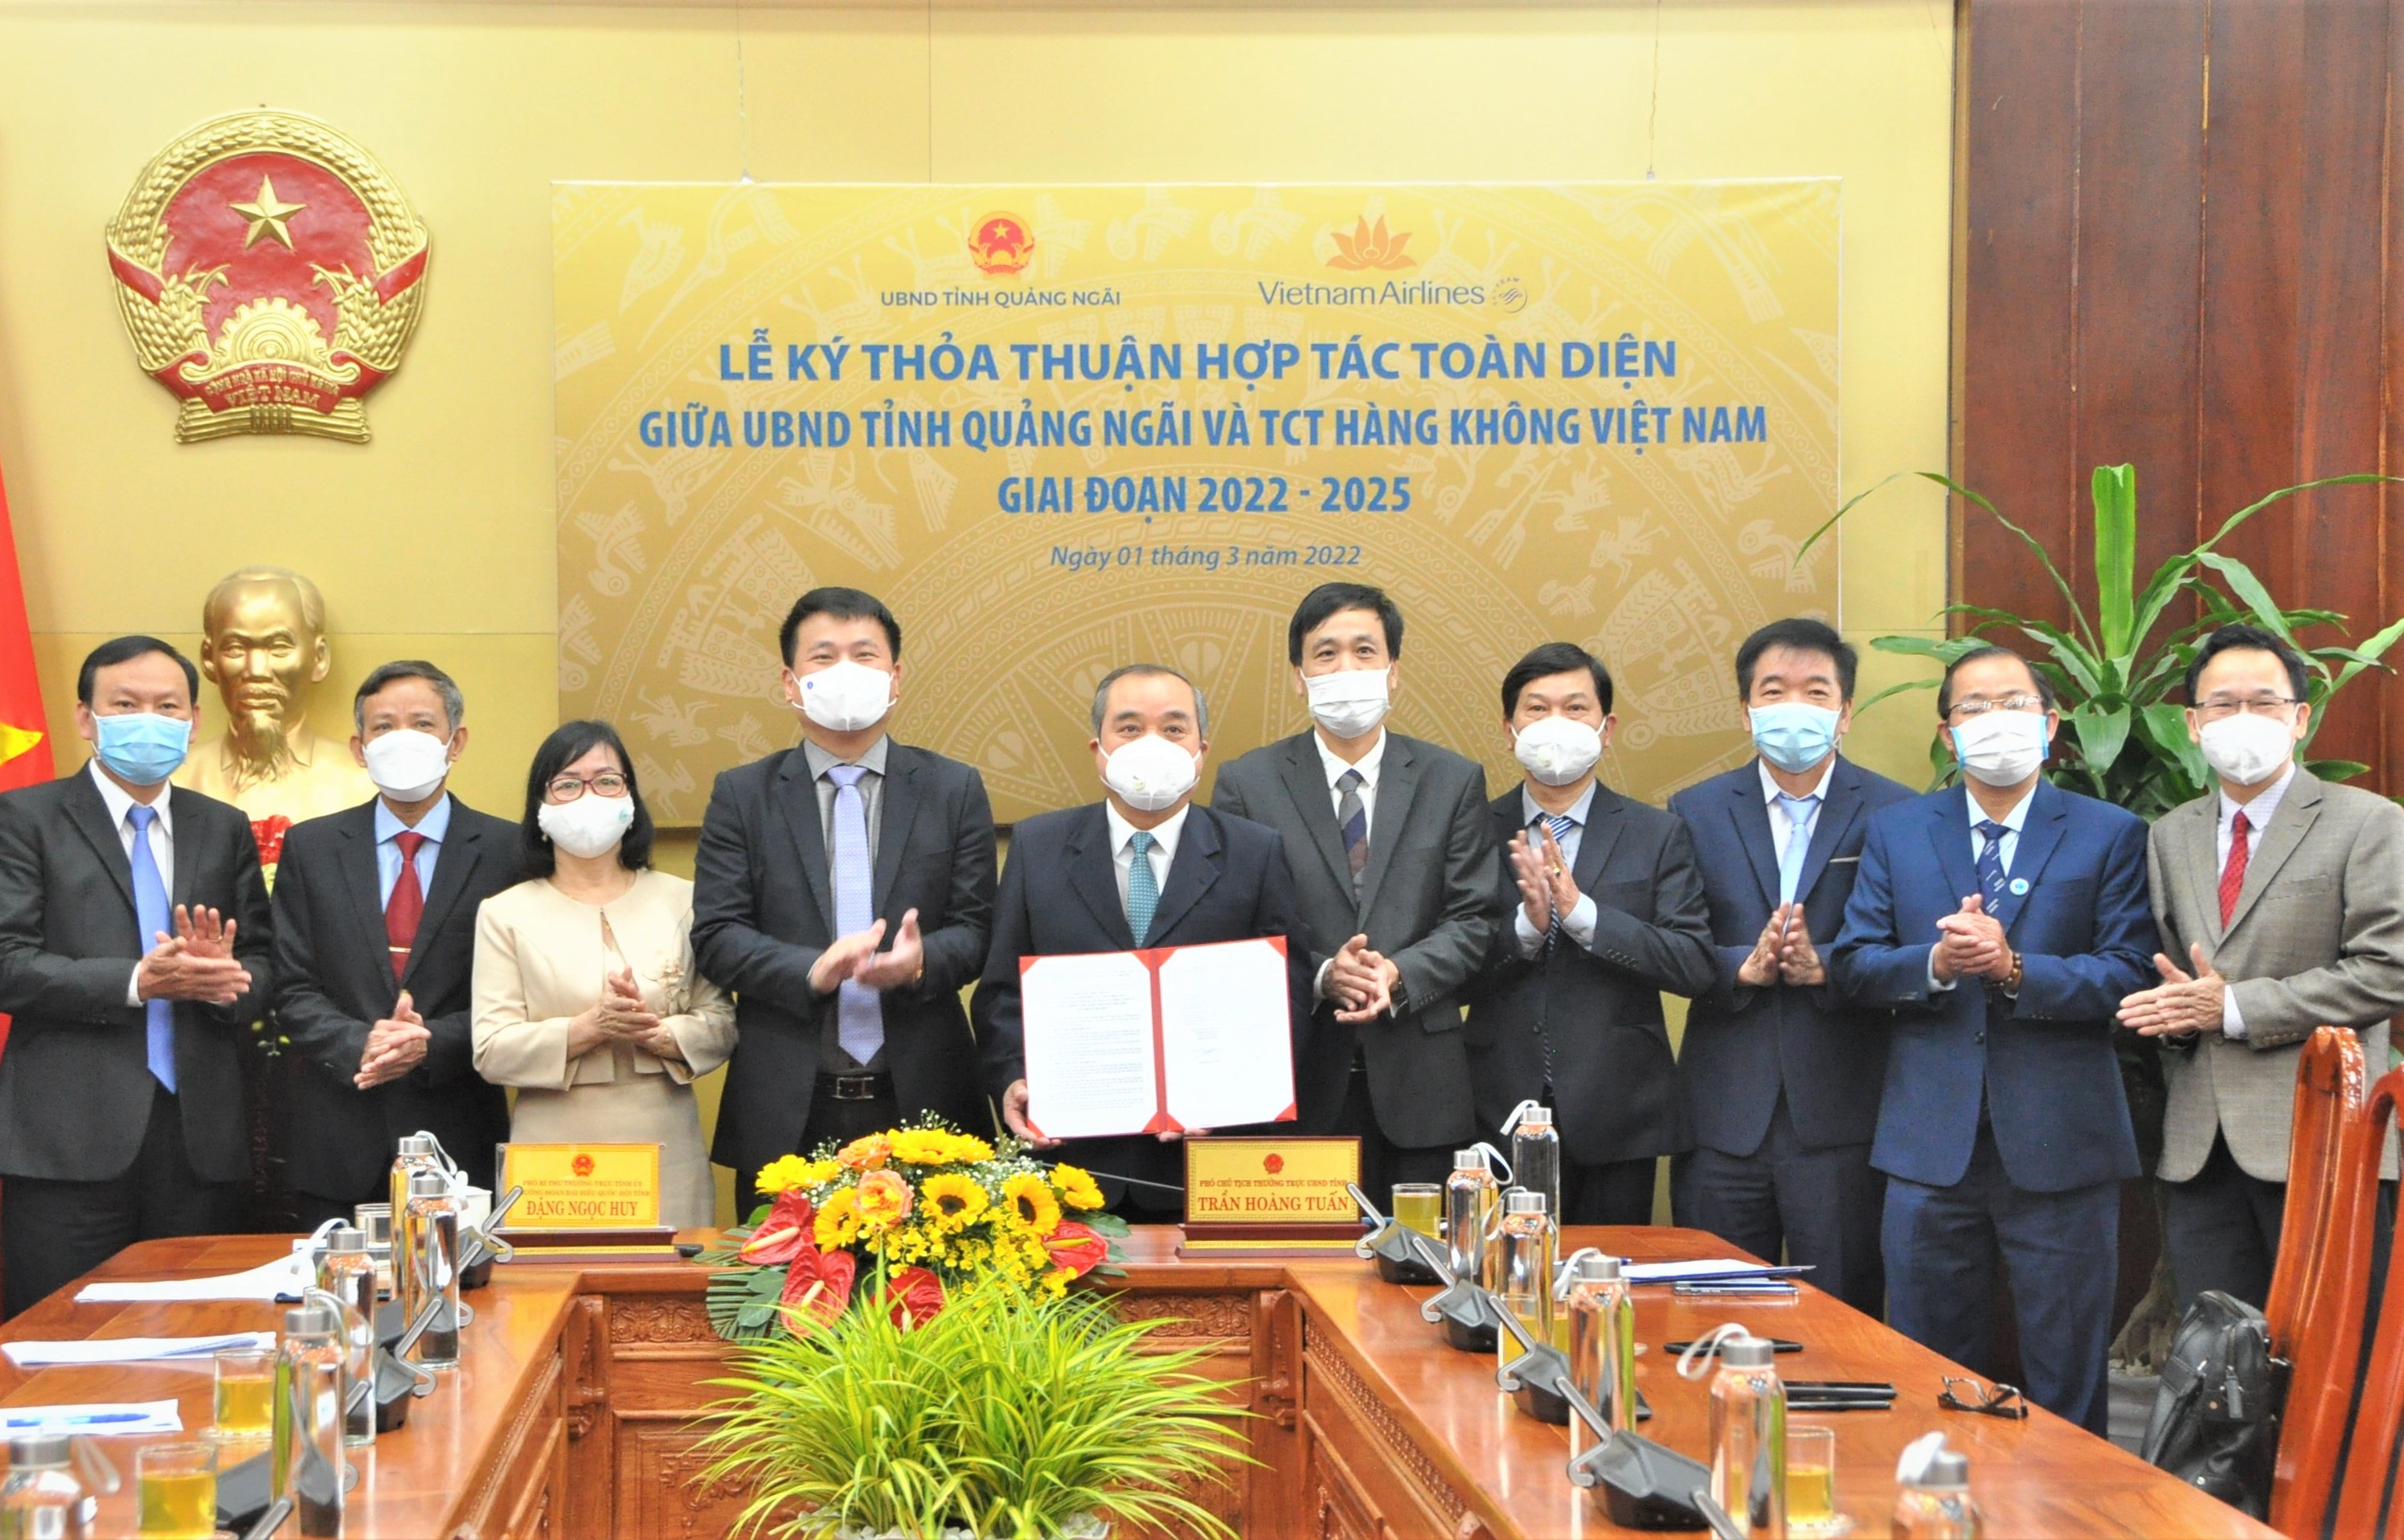 UBND tỉnh Quảng Ngãi và Vietnam Airlines ký kết hợp tác toàn diện